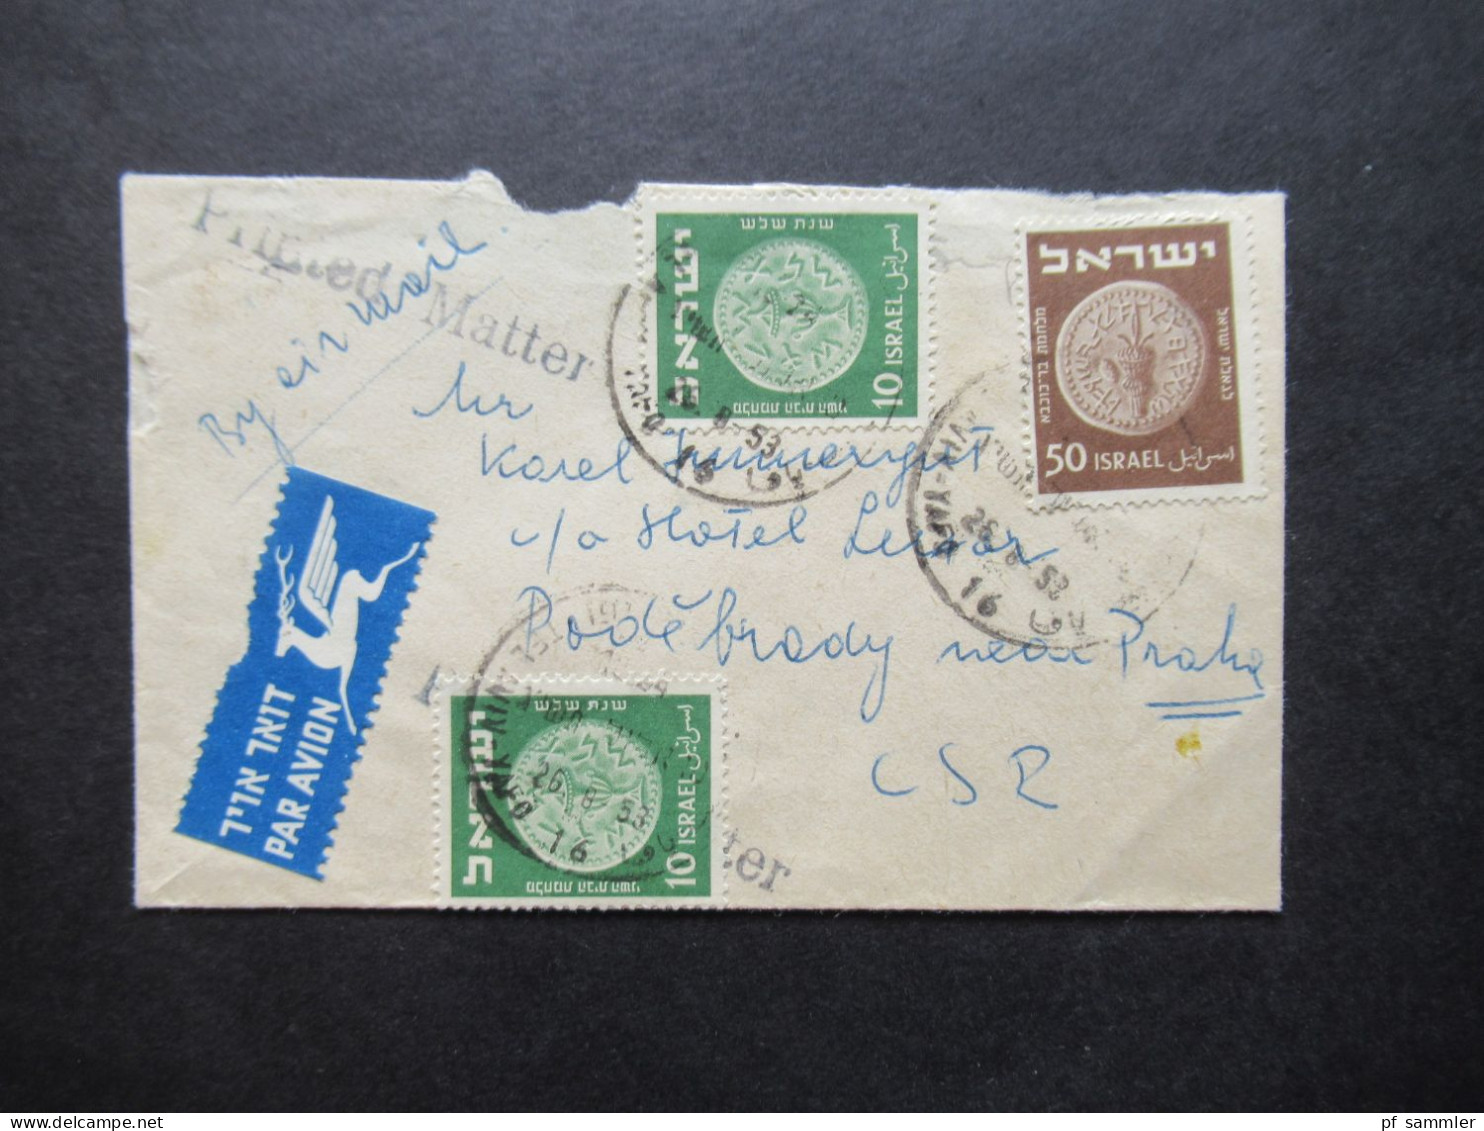 Israel 1953 By Air Mail / Luftpost In Die CSR Stempel L1 Printed Matter / Kleiner Umschlag - Cartas & Documentos